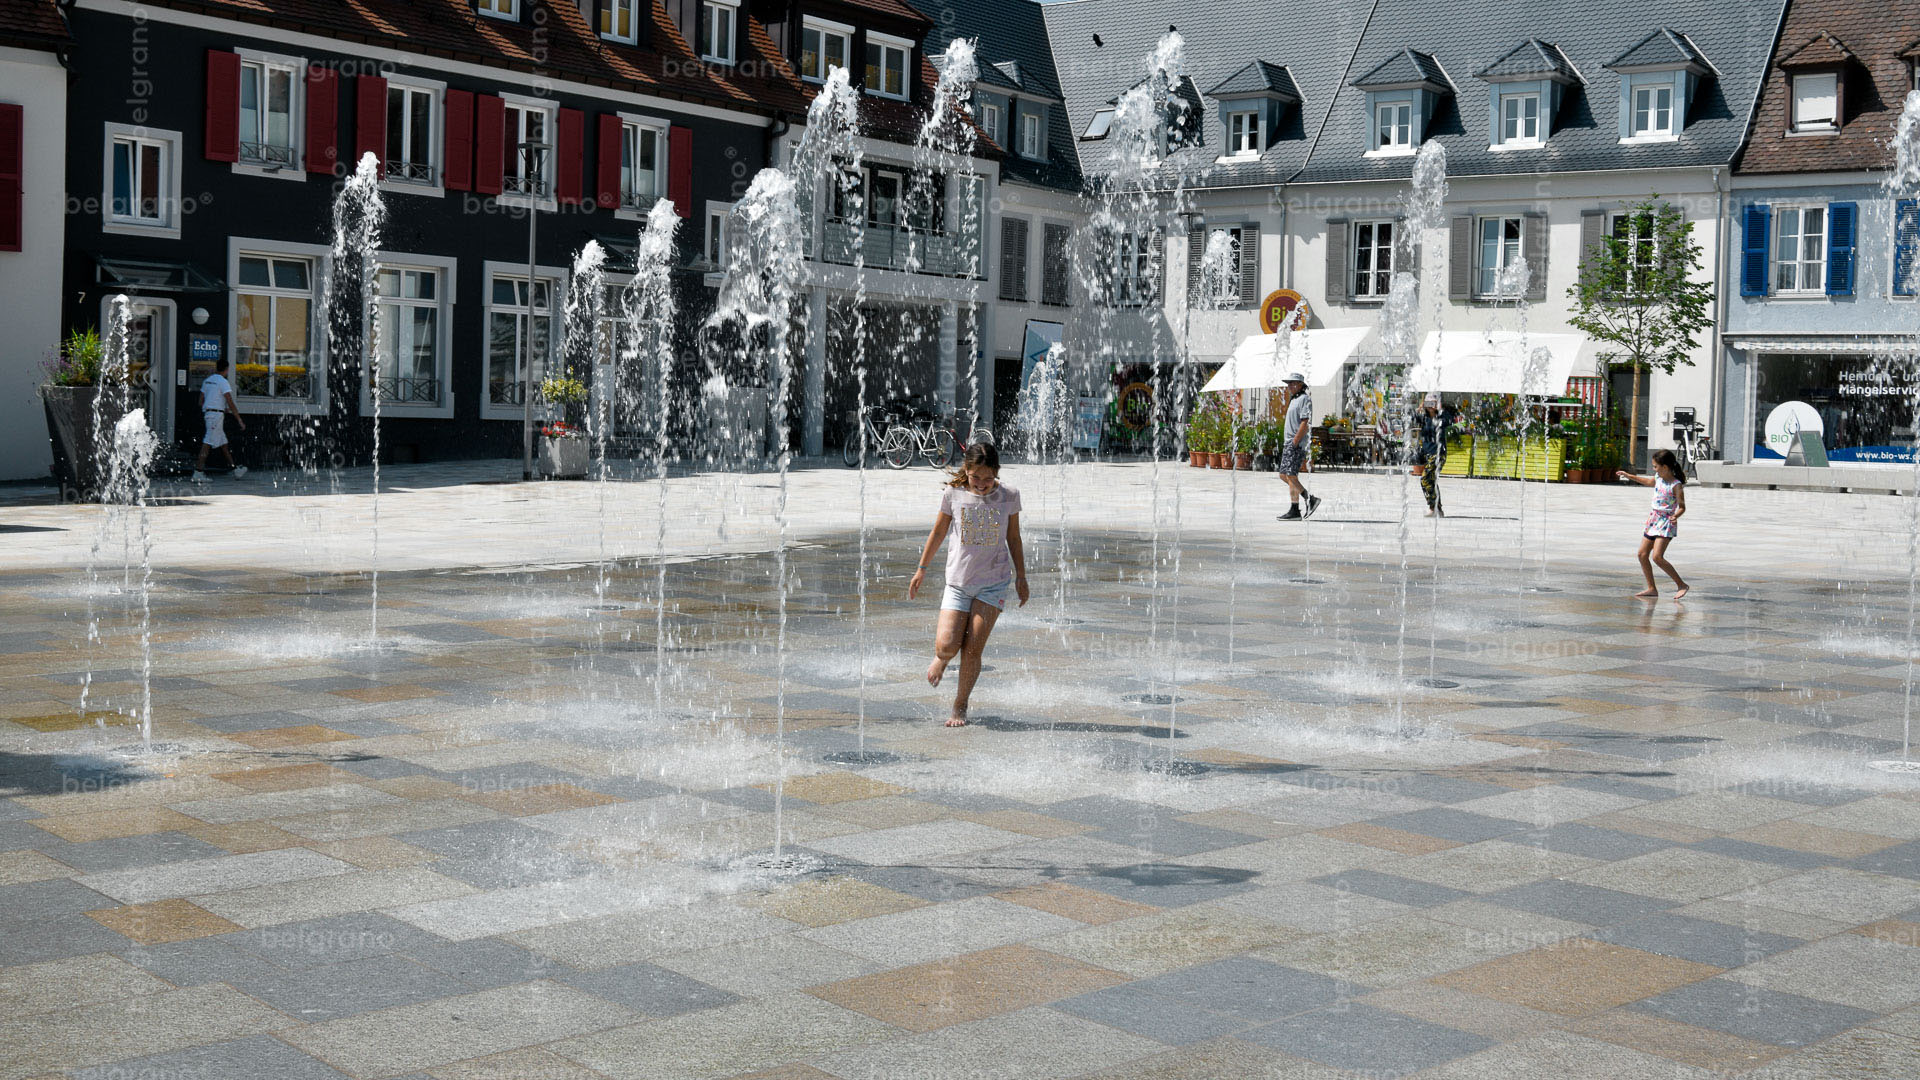 Marktplatz Breisach mit einem Naturstein Wasserspiel und Bodenbelägen aus belgrano® Granit